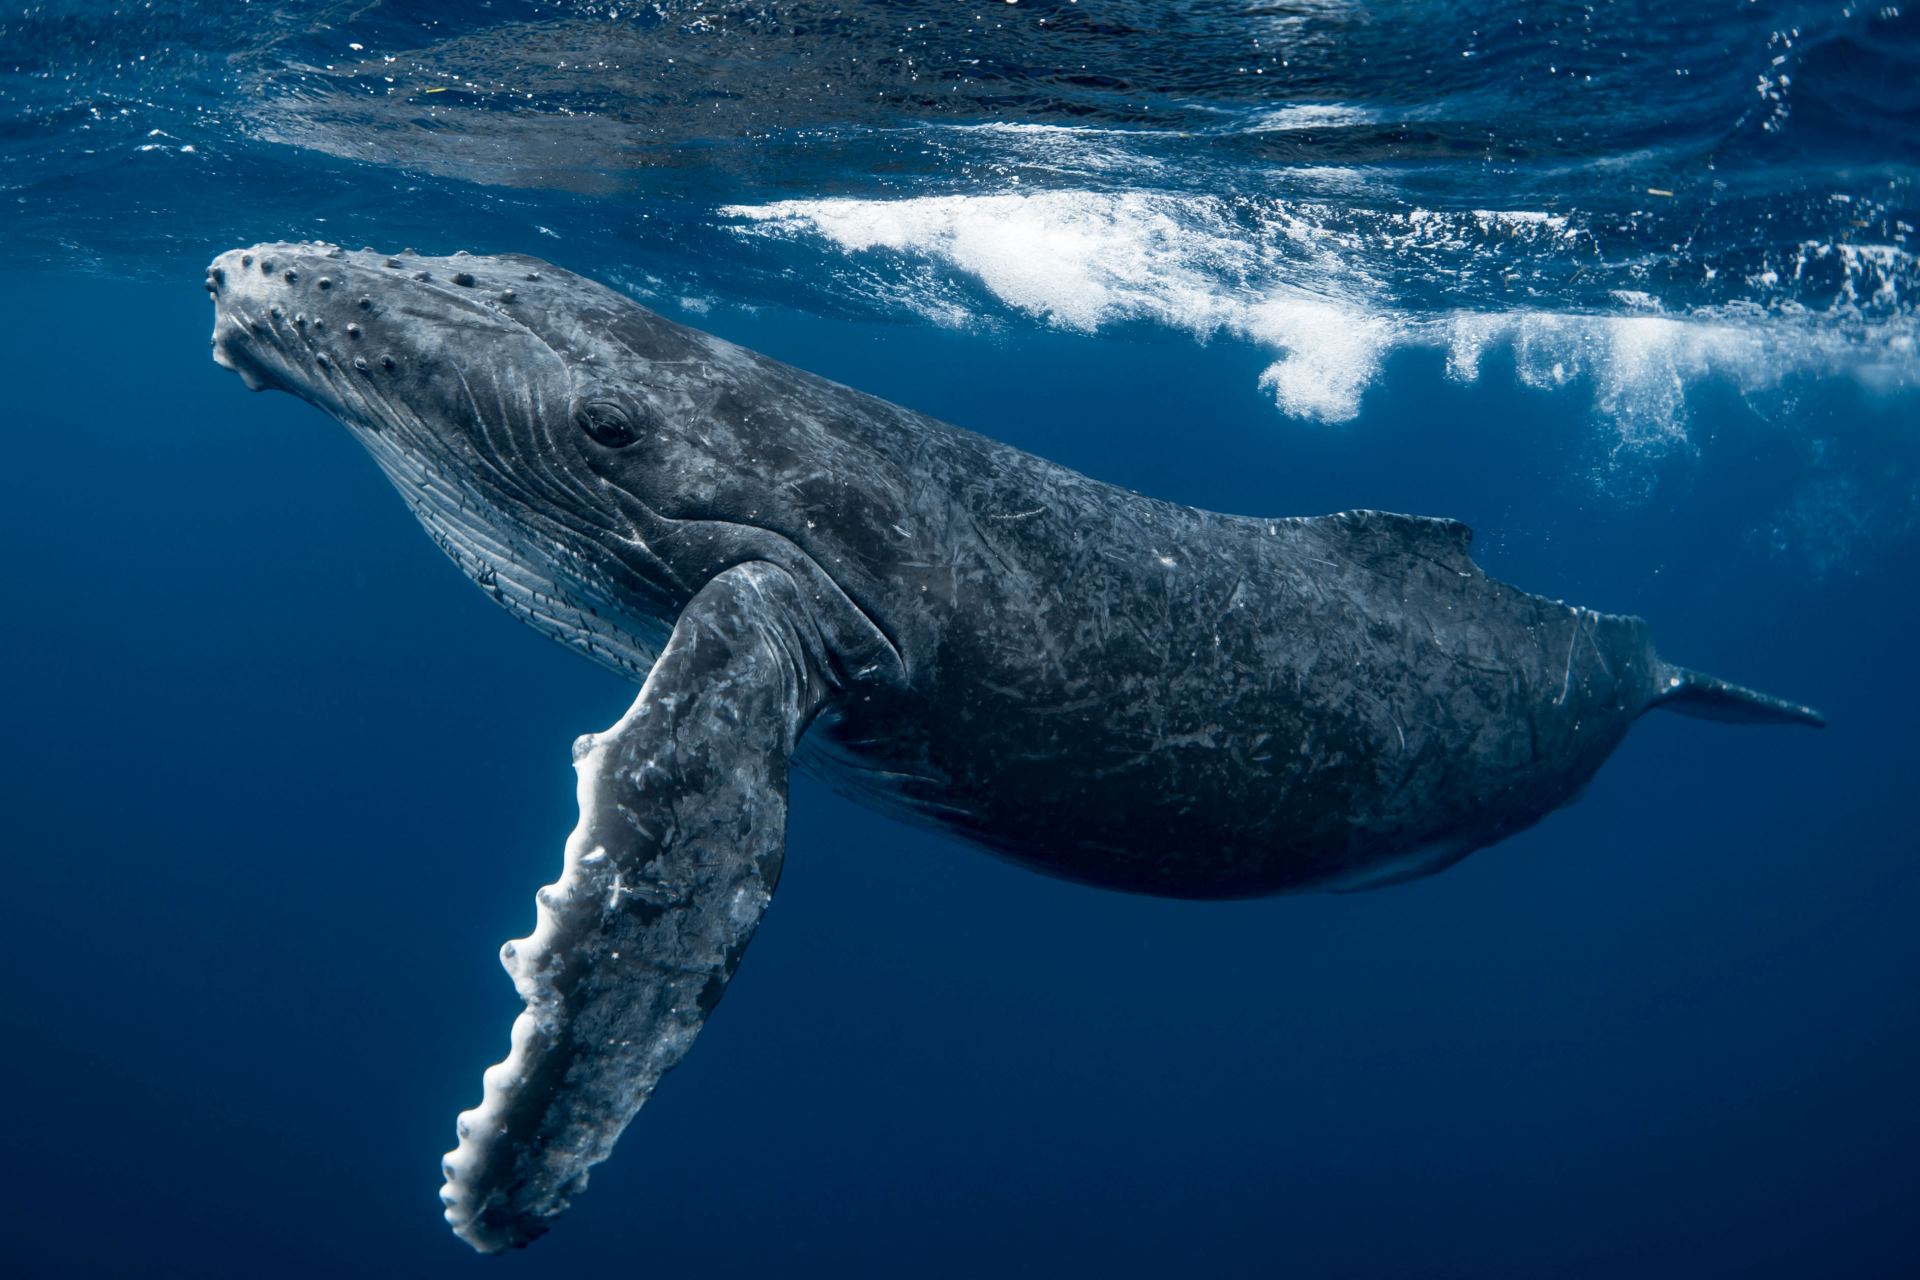  Dánsko Evropa věda příroda zajímavosti velryby oceán 